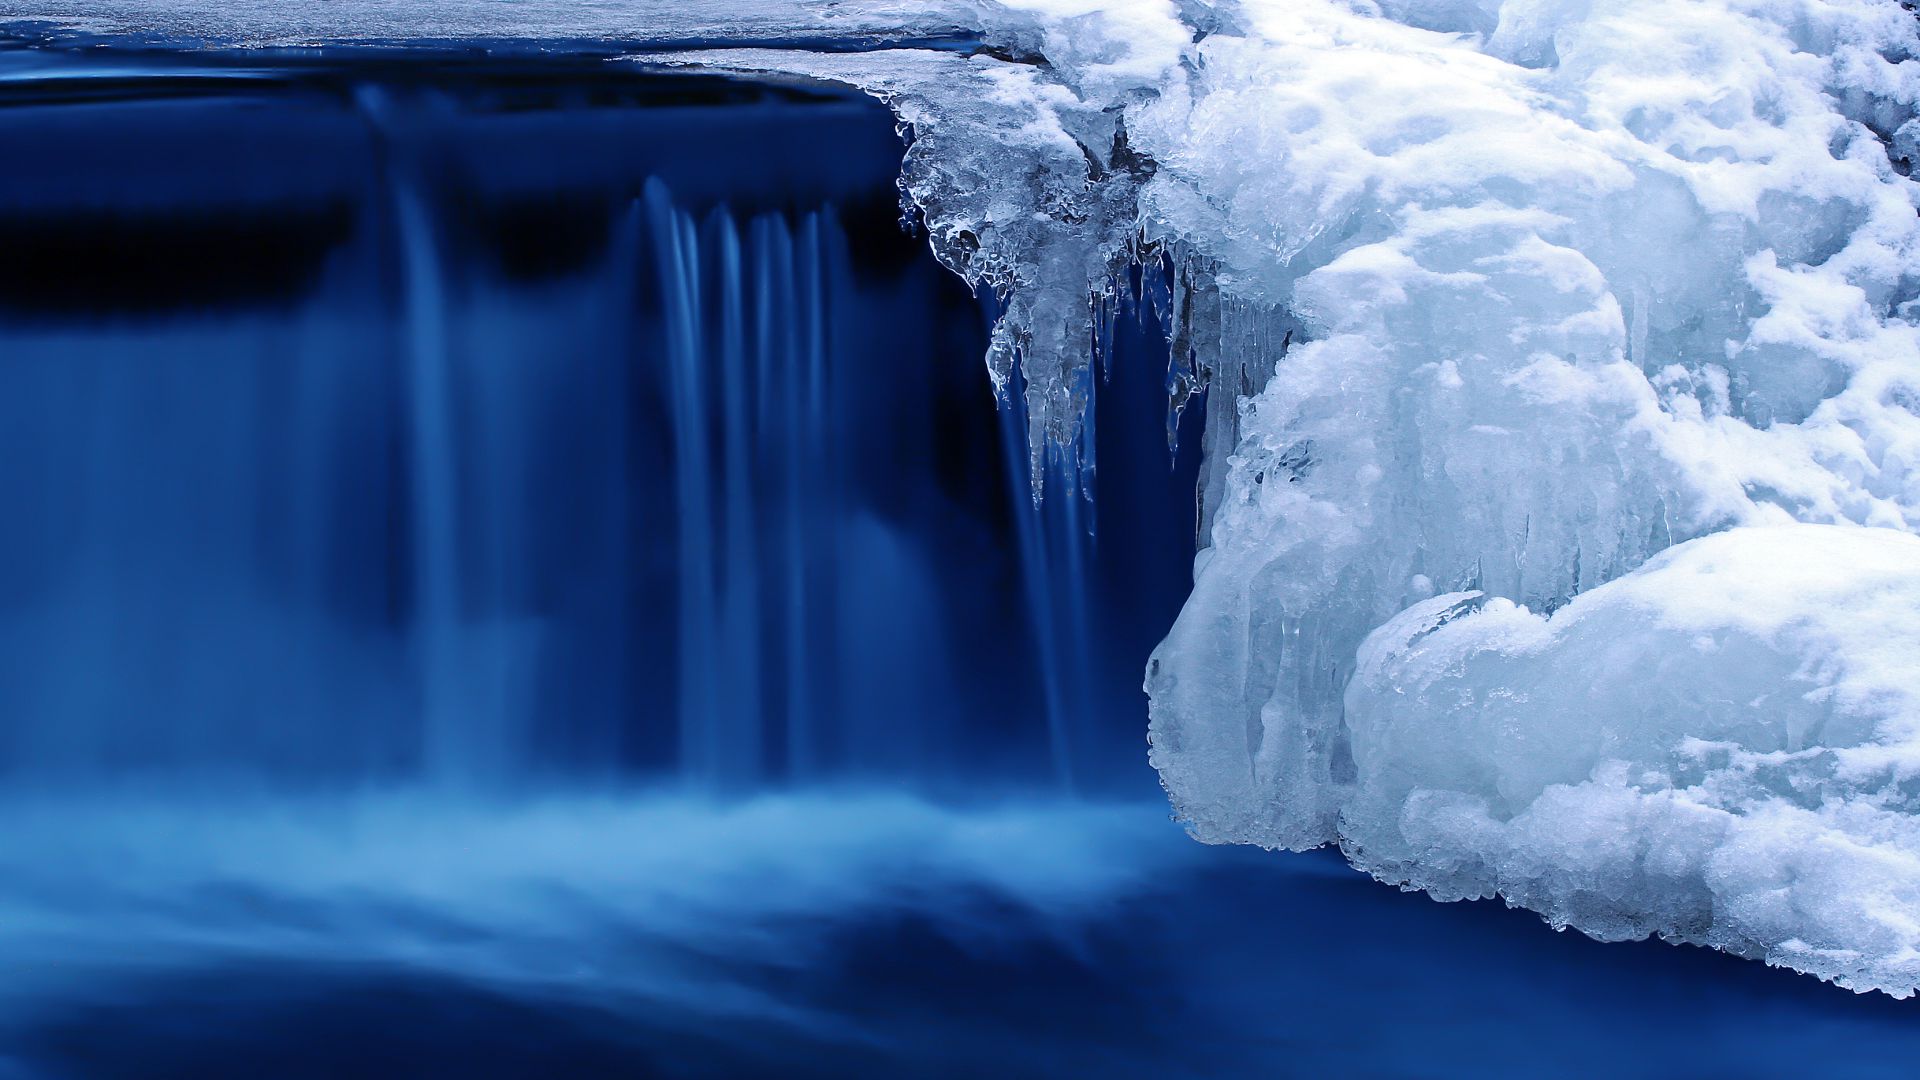 Озеро, 4k, HD, водопад, вода, снег, лед, Lake, 4k, HD wallpaper, waterfall, water, snow, ice (horizontal)